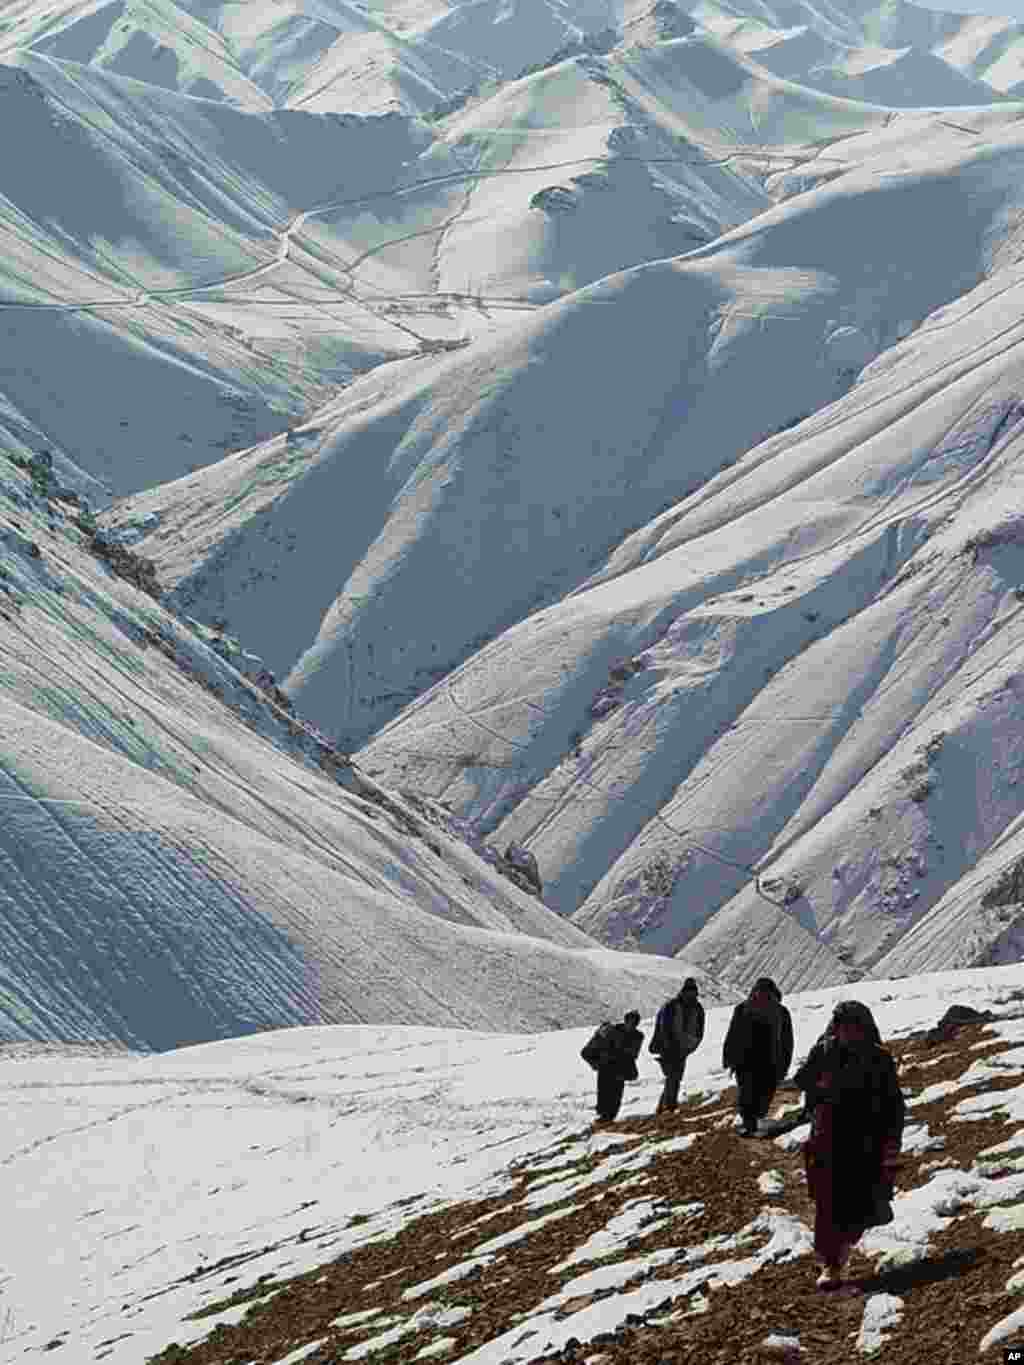 Bằng Danh Dự - Bức ảnh mùa đông ở Afghanista. Hằng năm, vào mùa đông ở Afghanistan hàng trăm người chết vì thời tiết khắc nghiệt. Tuyết phủ kín khiến đường xá không còn lưu thông được. Người dân phải đi bộ hàng dặm đường để đến khu trung tâm gần nhất (Ảnh